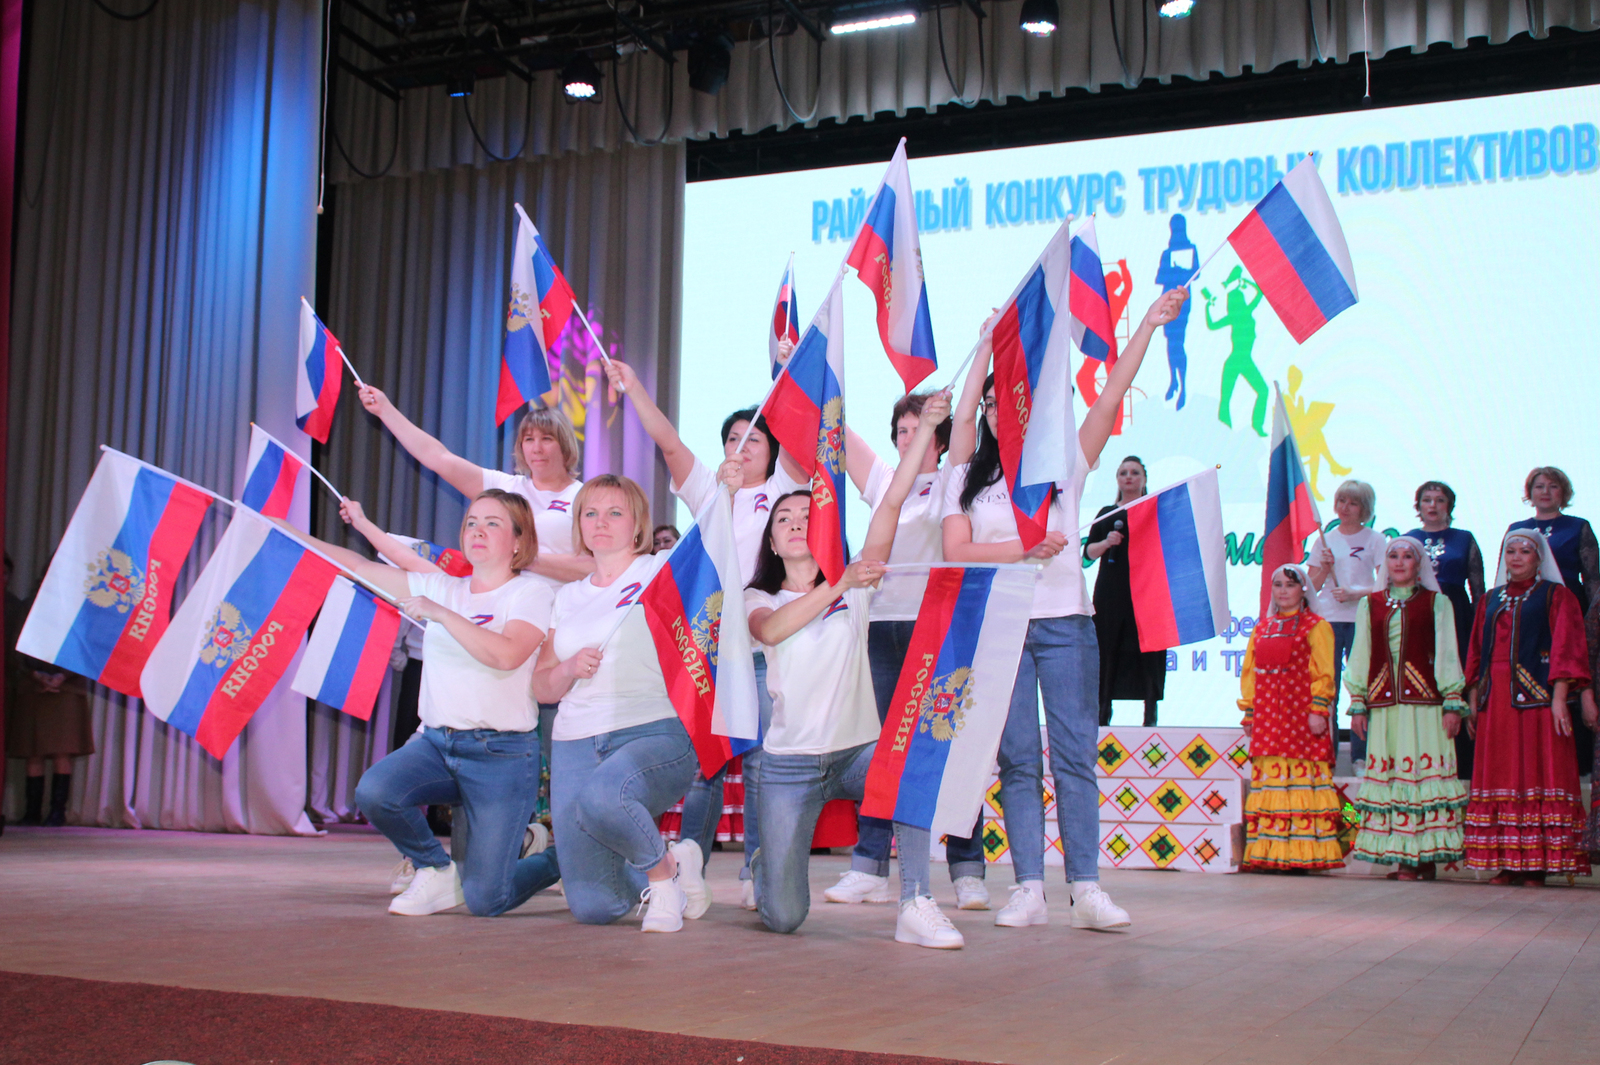 В с. Красноусольском прошёл грандиозный концерт трудовых коллективов!